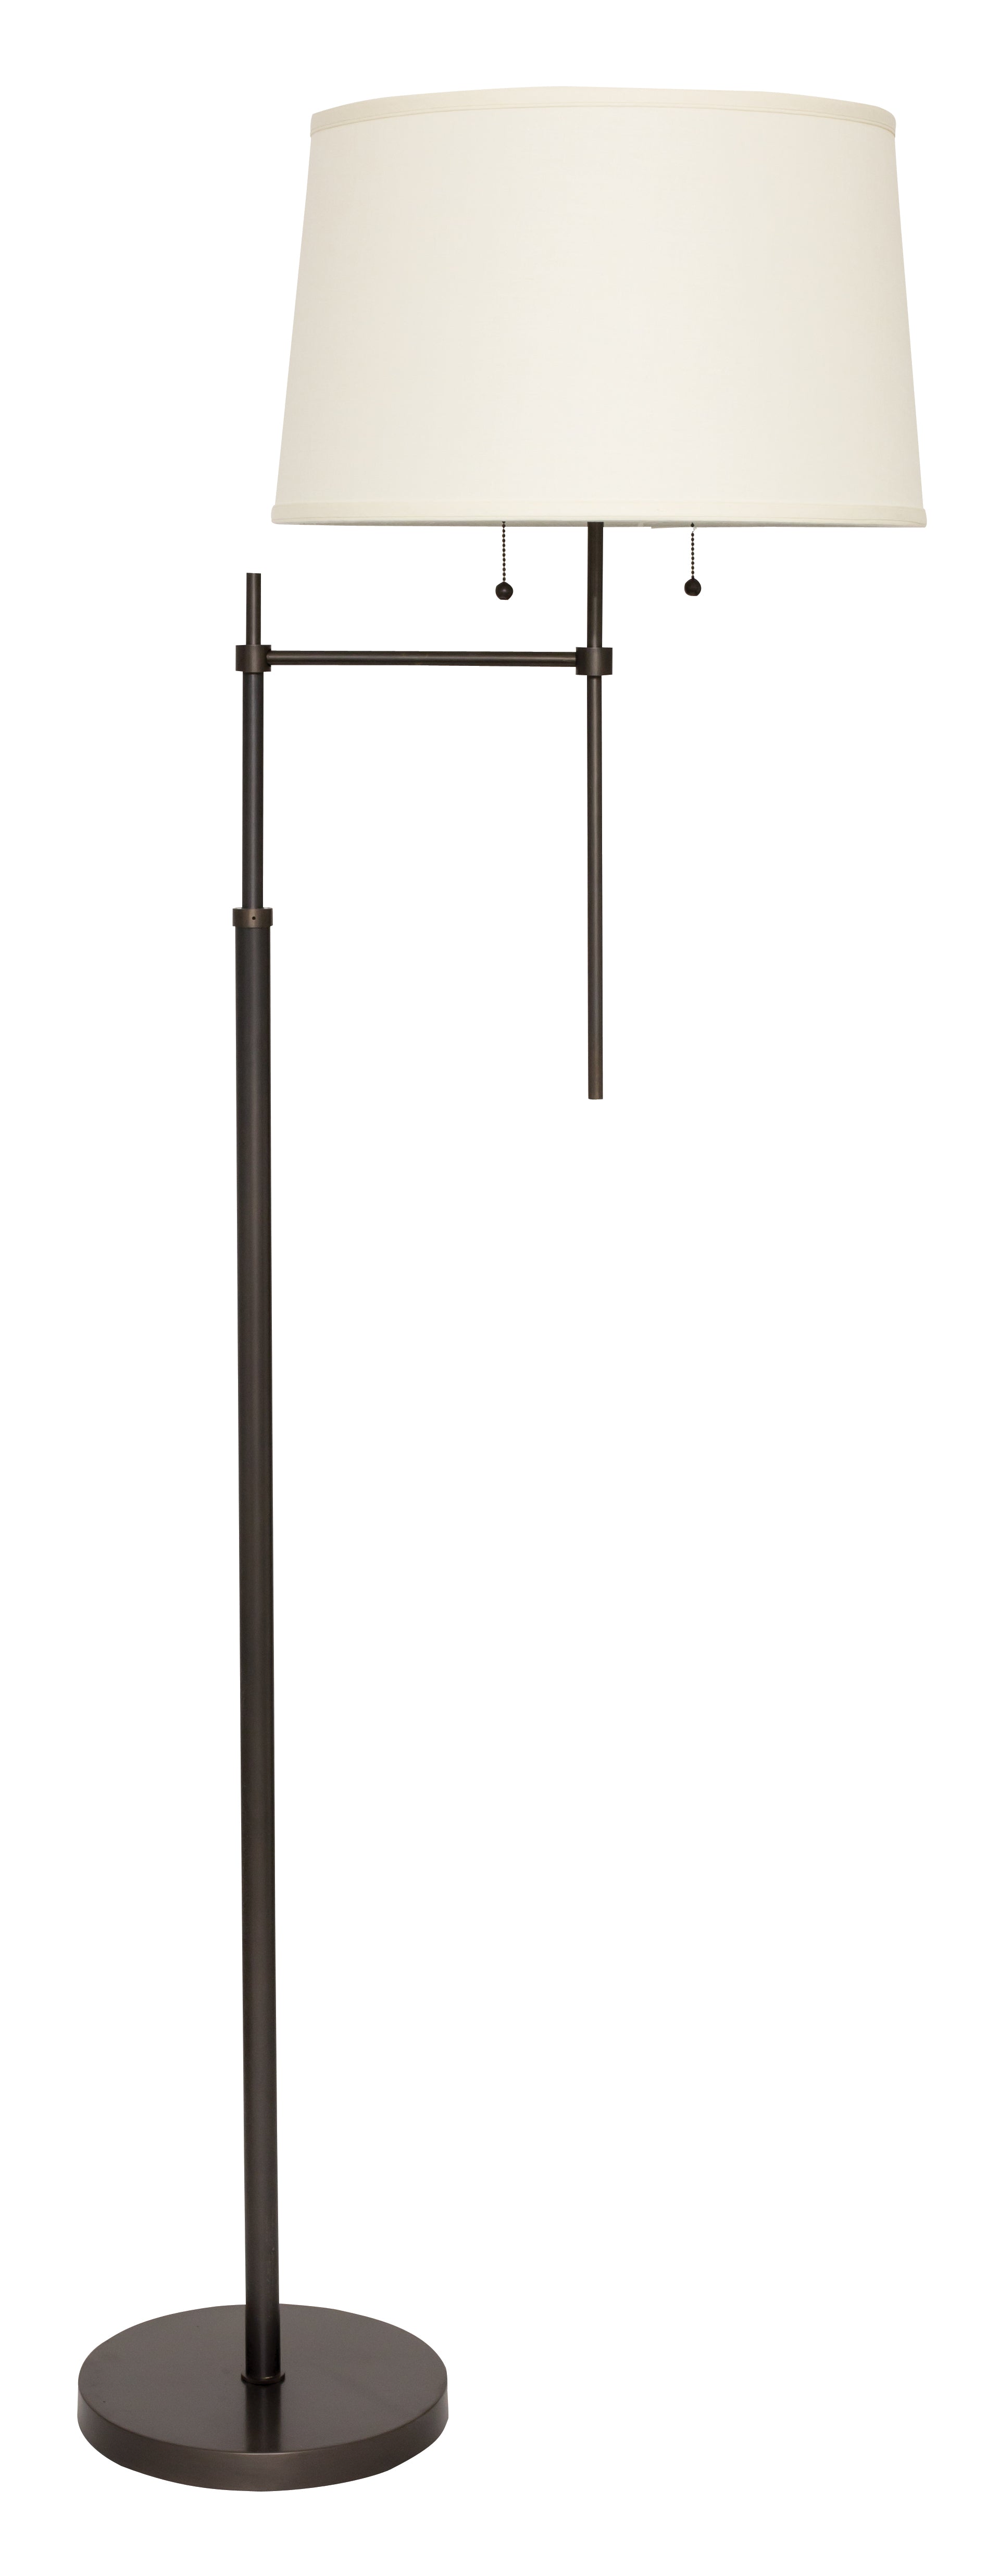 House of Troy Averill Adjustable Floor Lamp Offset Arm Oil Rubbed Bronze AV101-OB